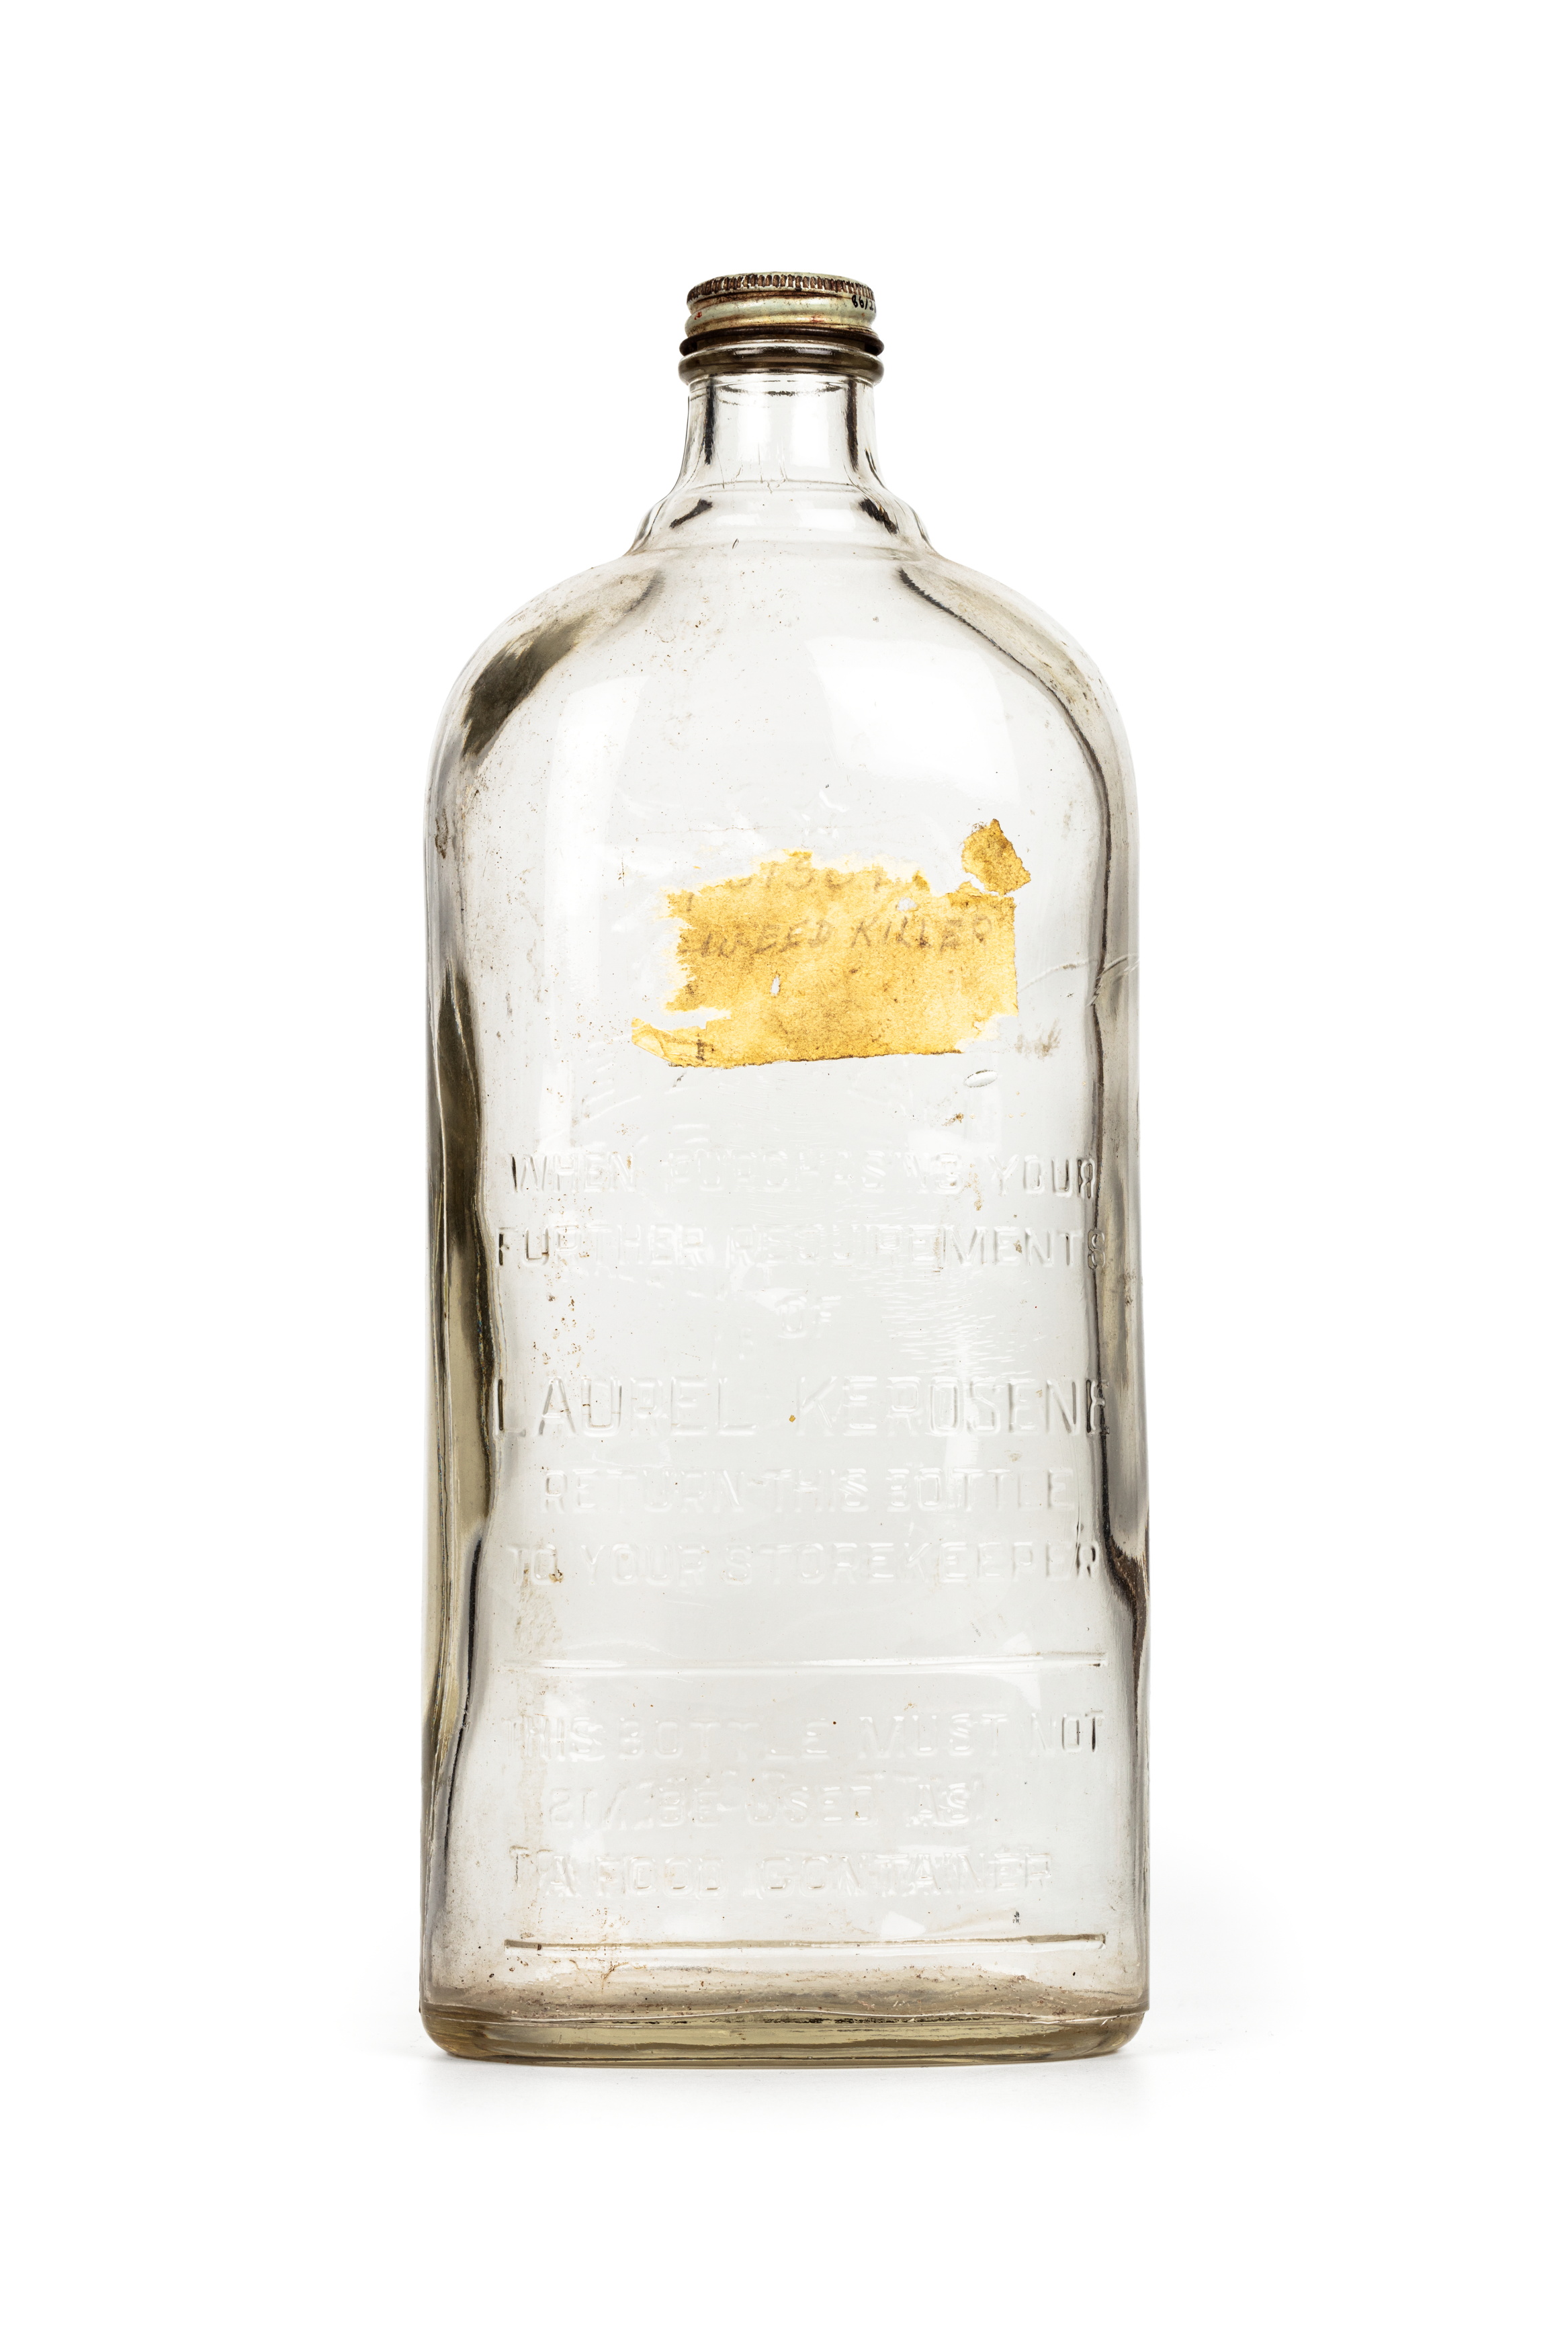 Bottle of 'Laurel Kerosene' by Vacuum Oil Company Pty Ltd